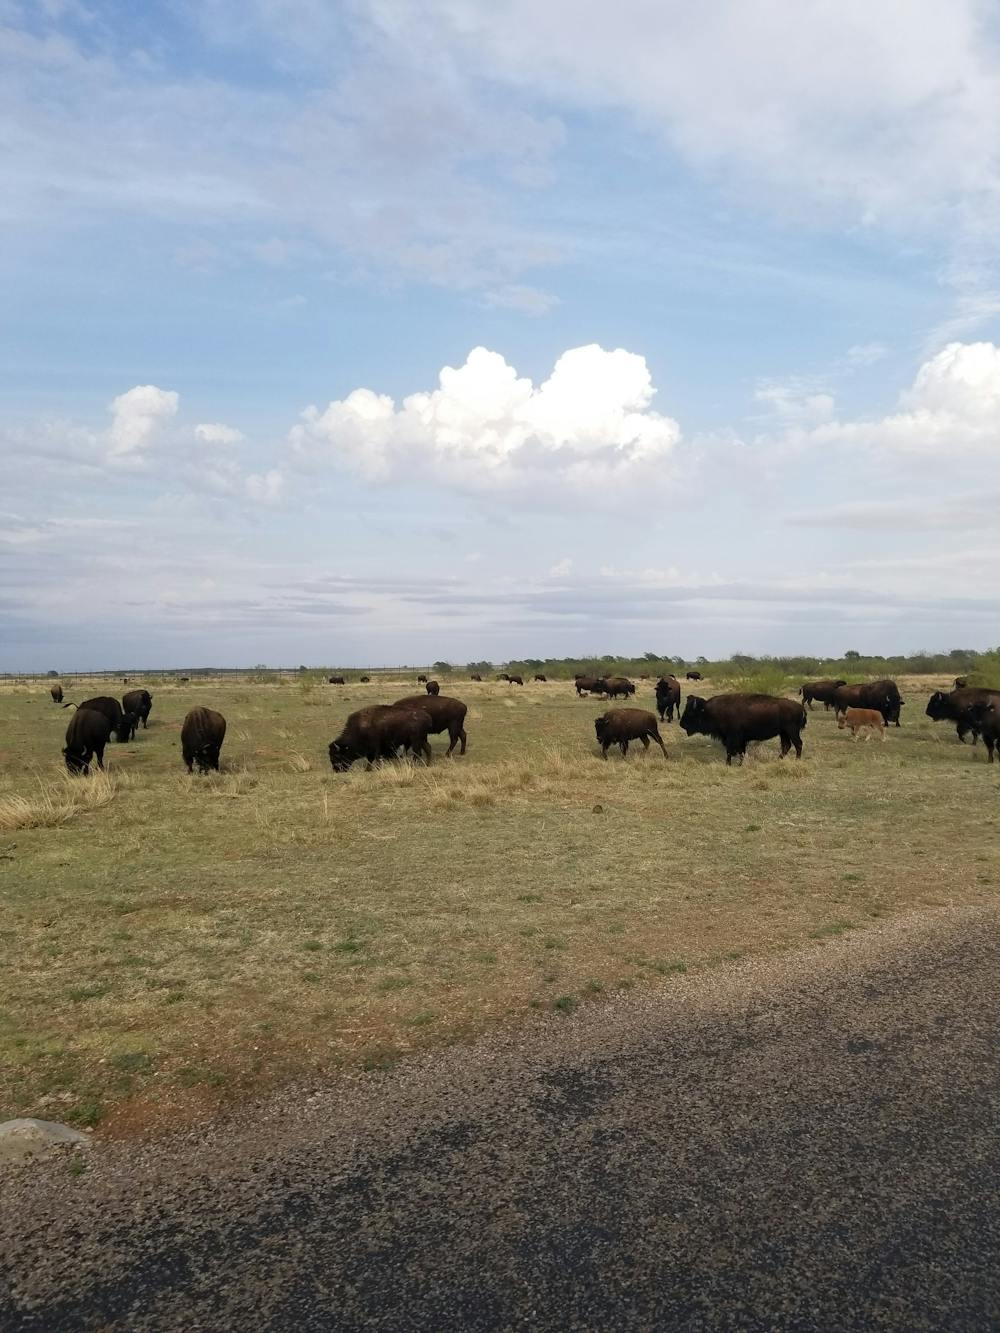 The Bison Herd